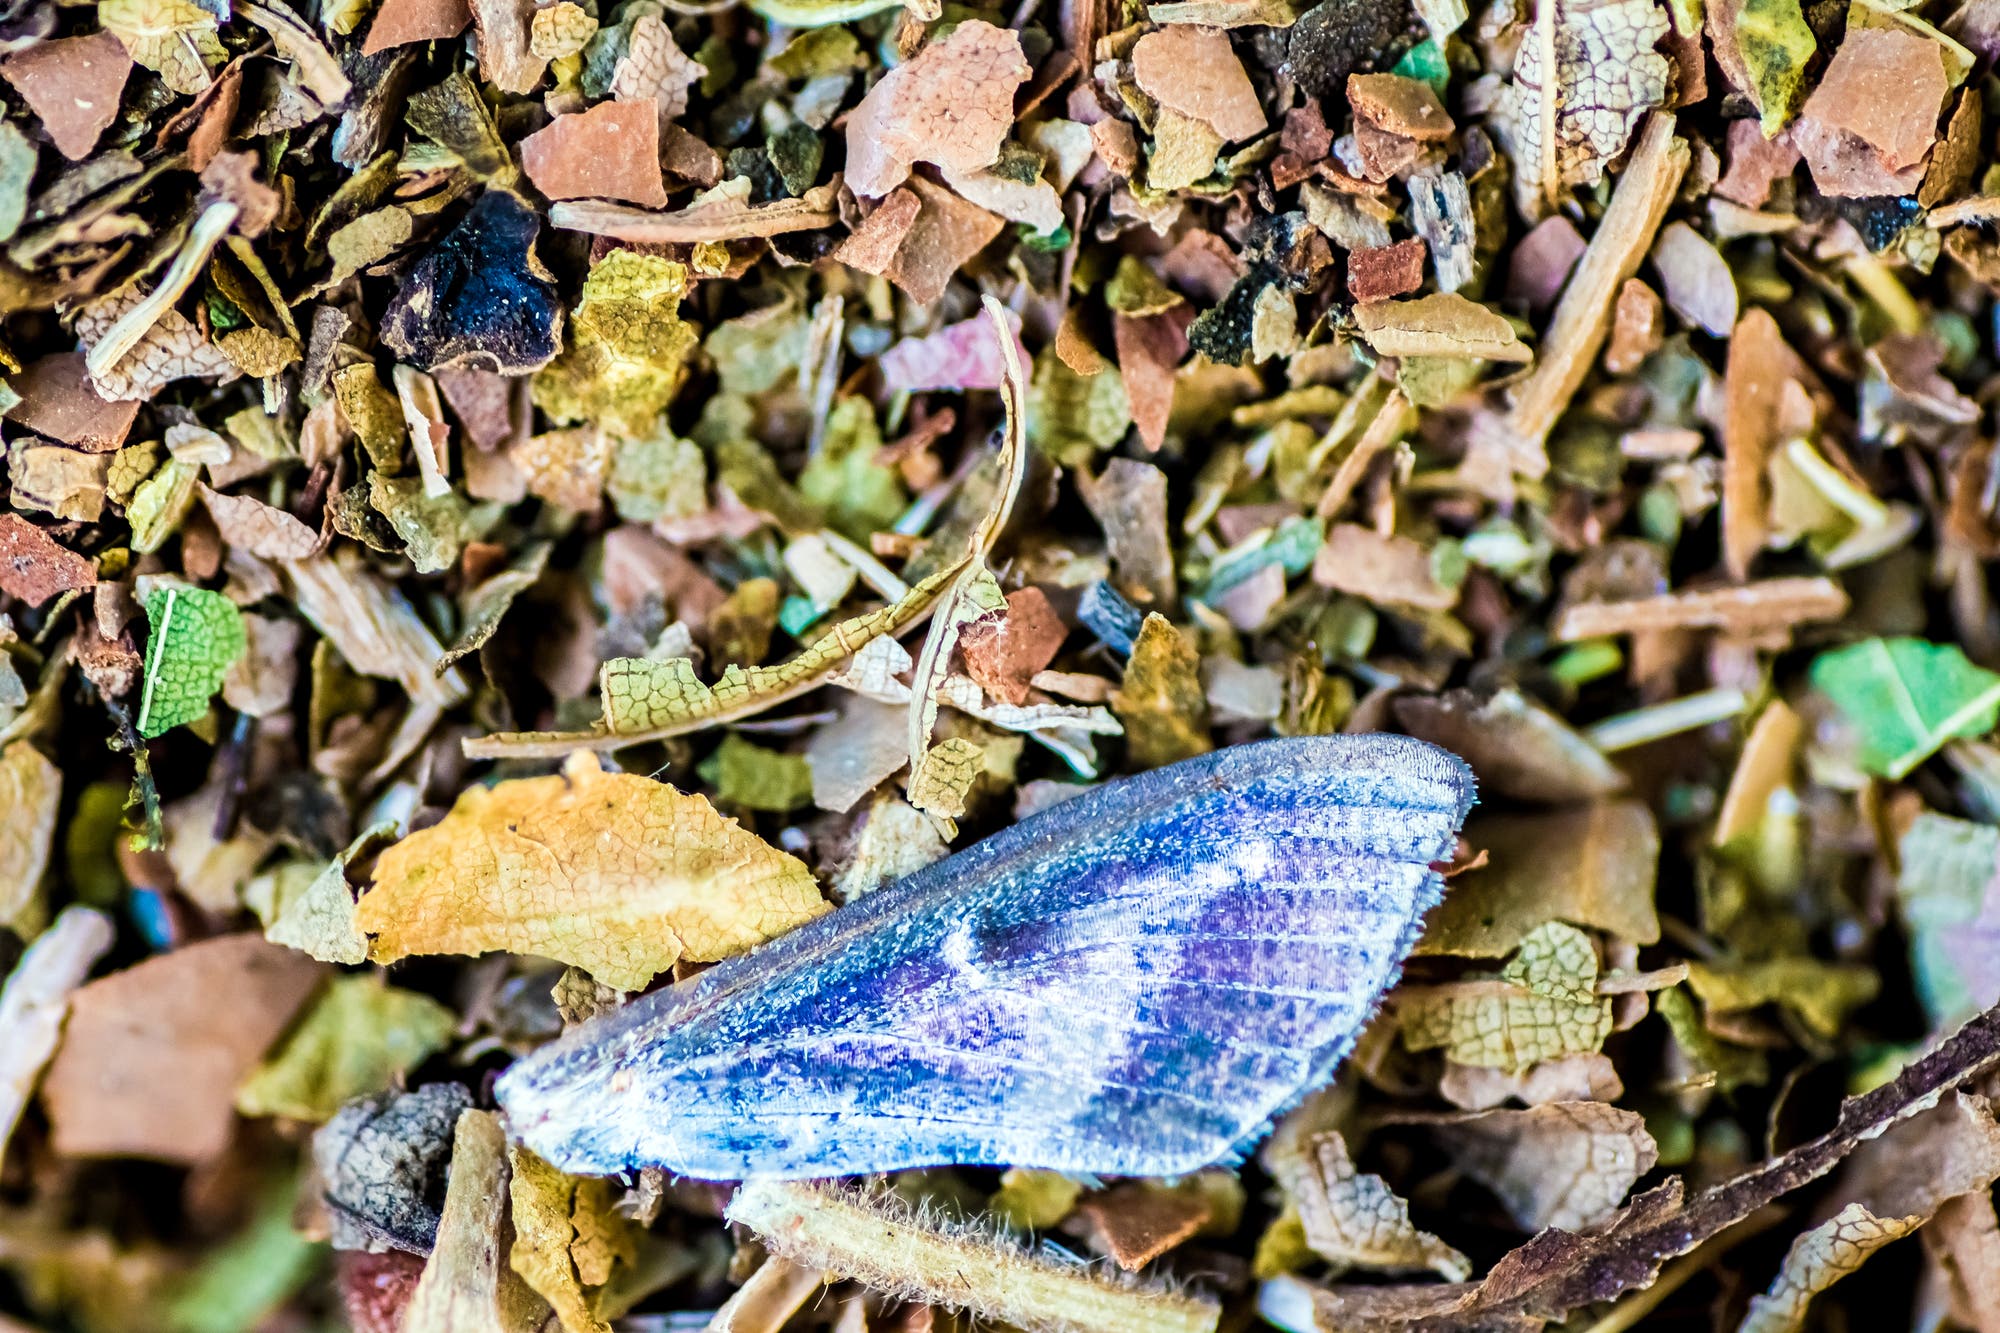 Symbolbild für die Insektenkrise? Ein abgerissener Schmetterlingsflügel liegt am Boden – und kümmert wahrscheinlich nur wenige Menschen.